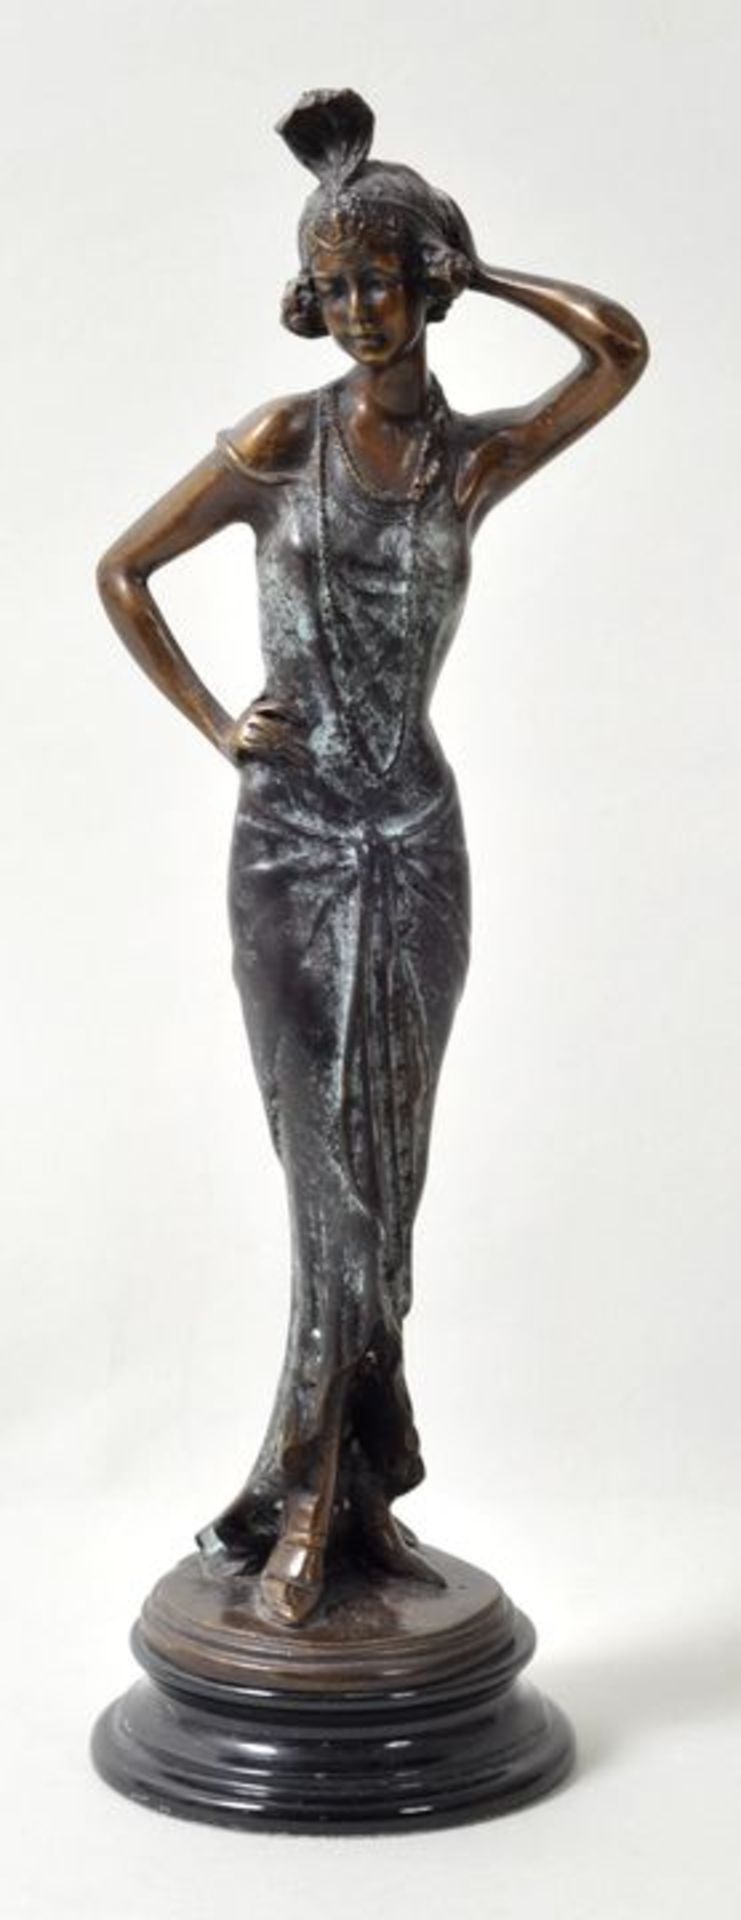 Elegante Art Déco-Figur.Bronze, gegossen, partiell patiniert. Motiv der 1920er/1930er Jahre; hier